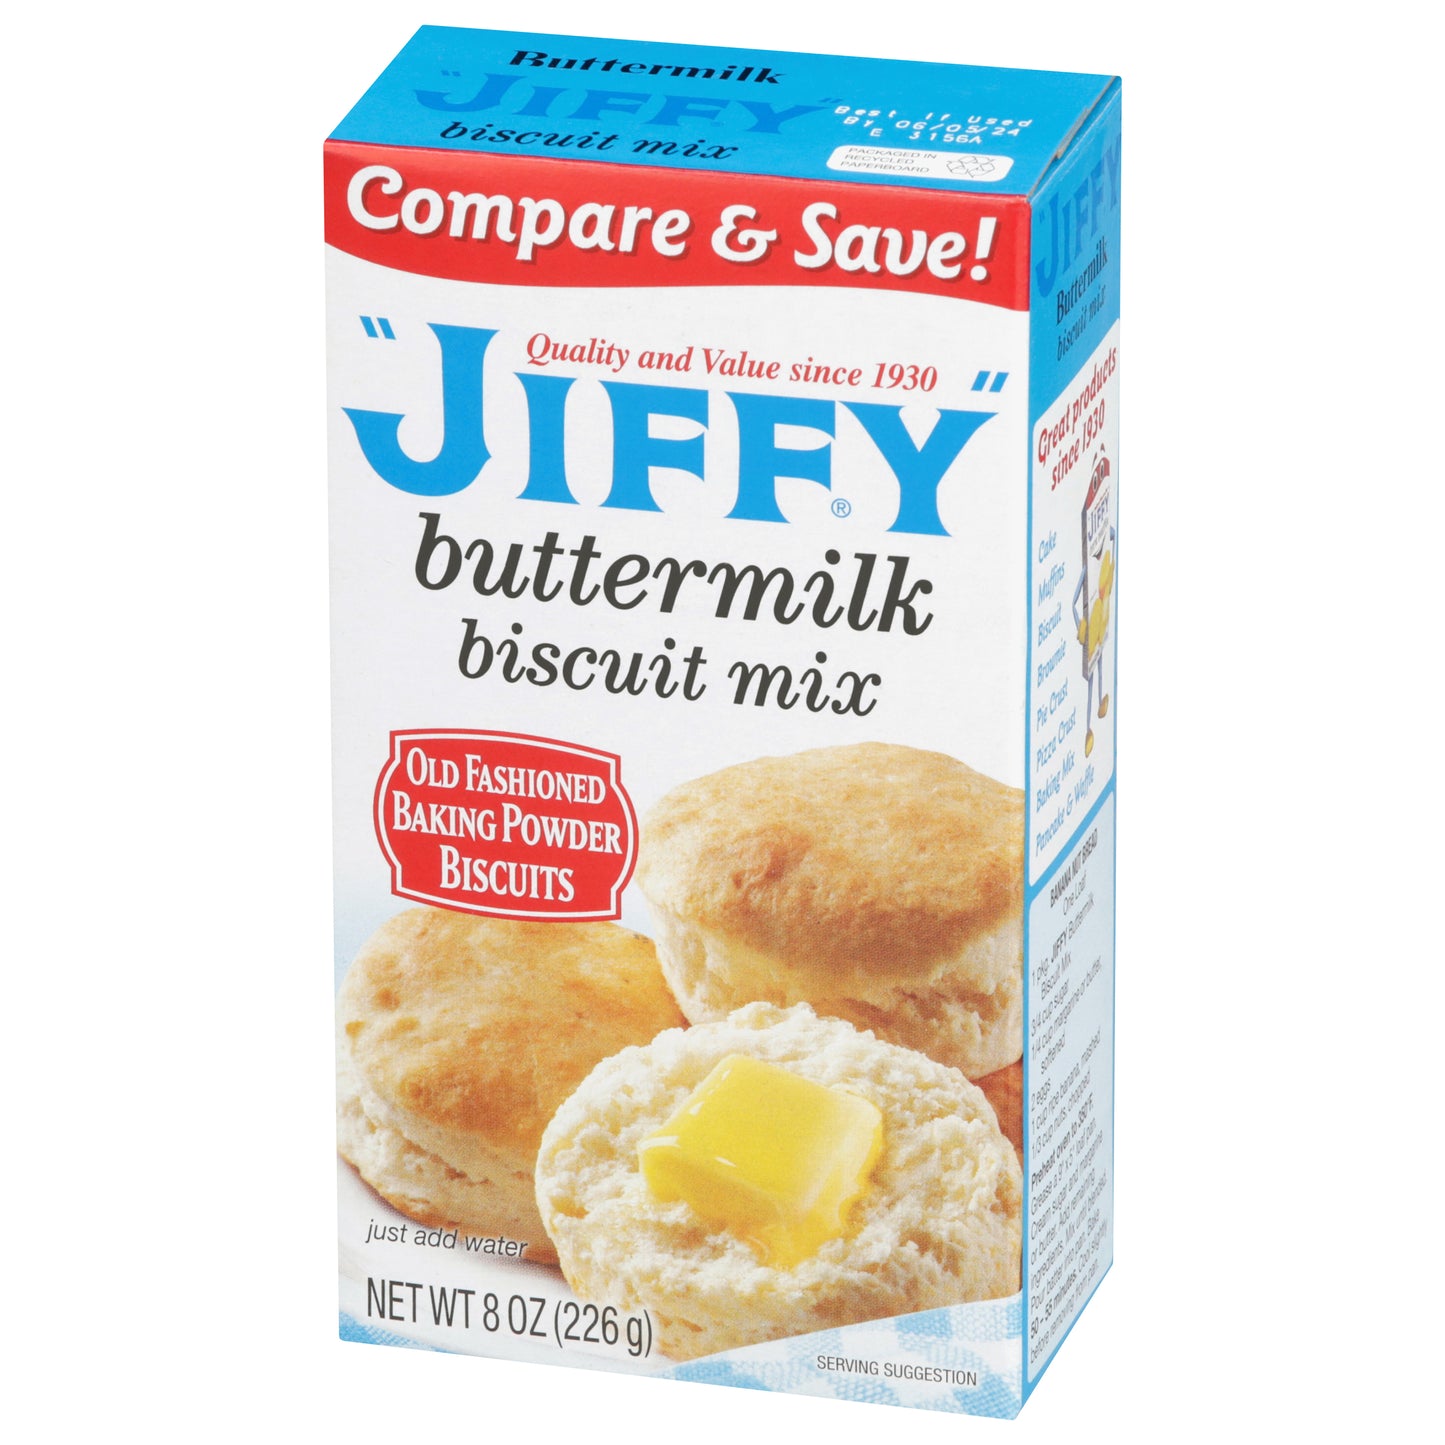 Buttermilk Biscuit Mix (12 pk.)